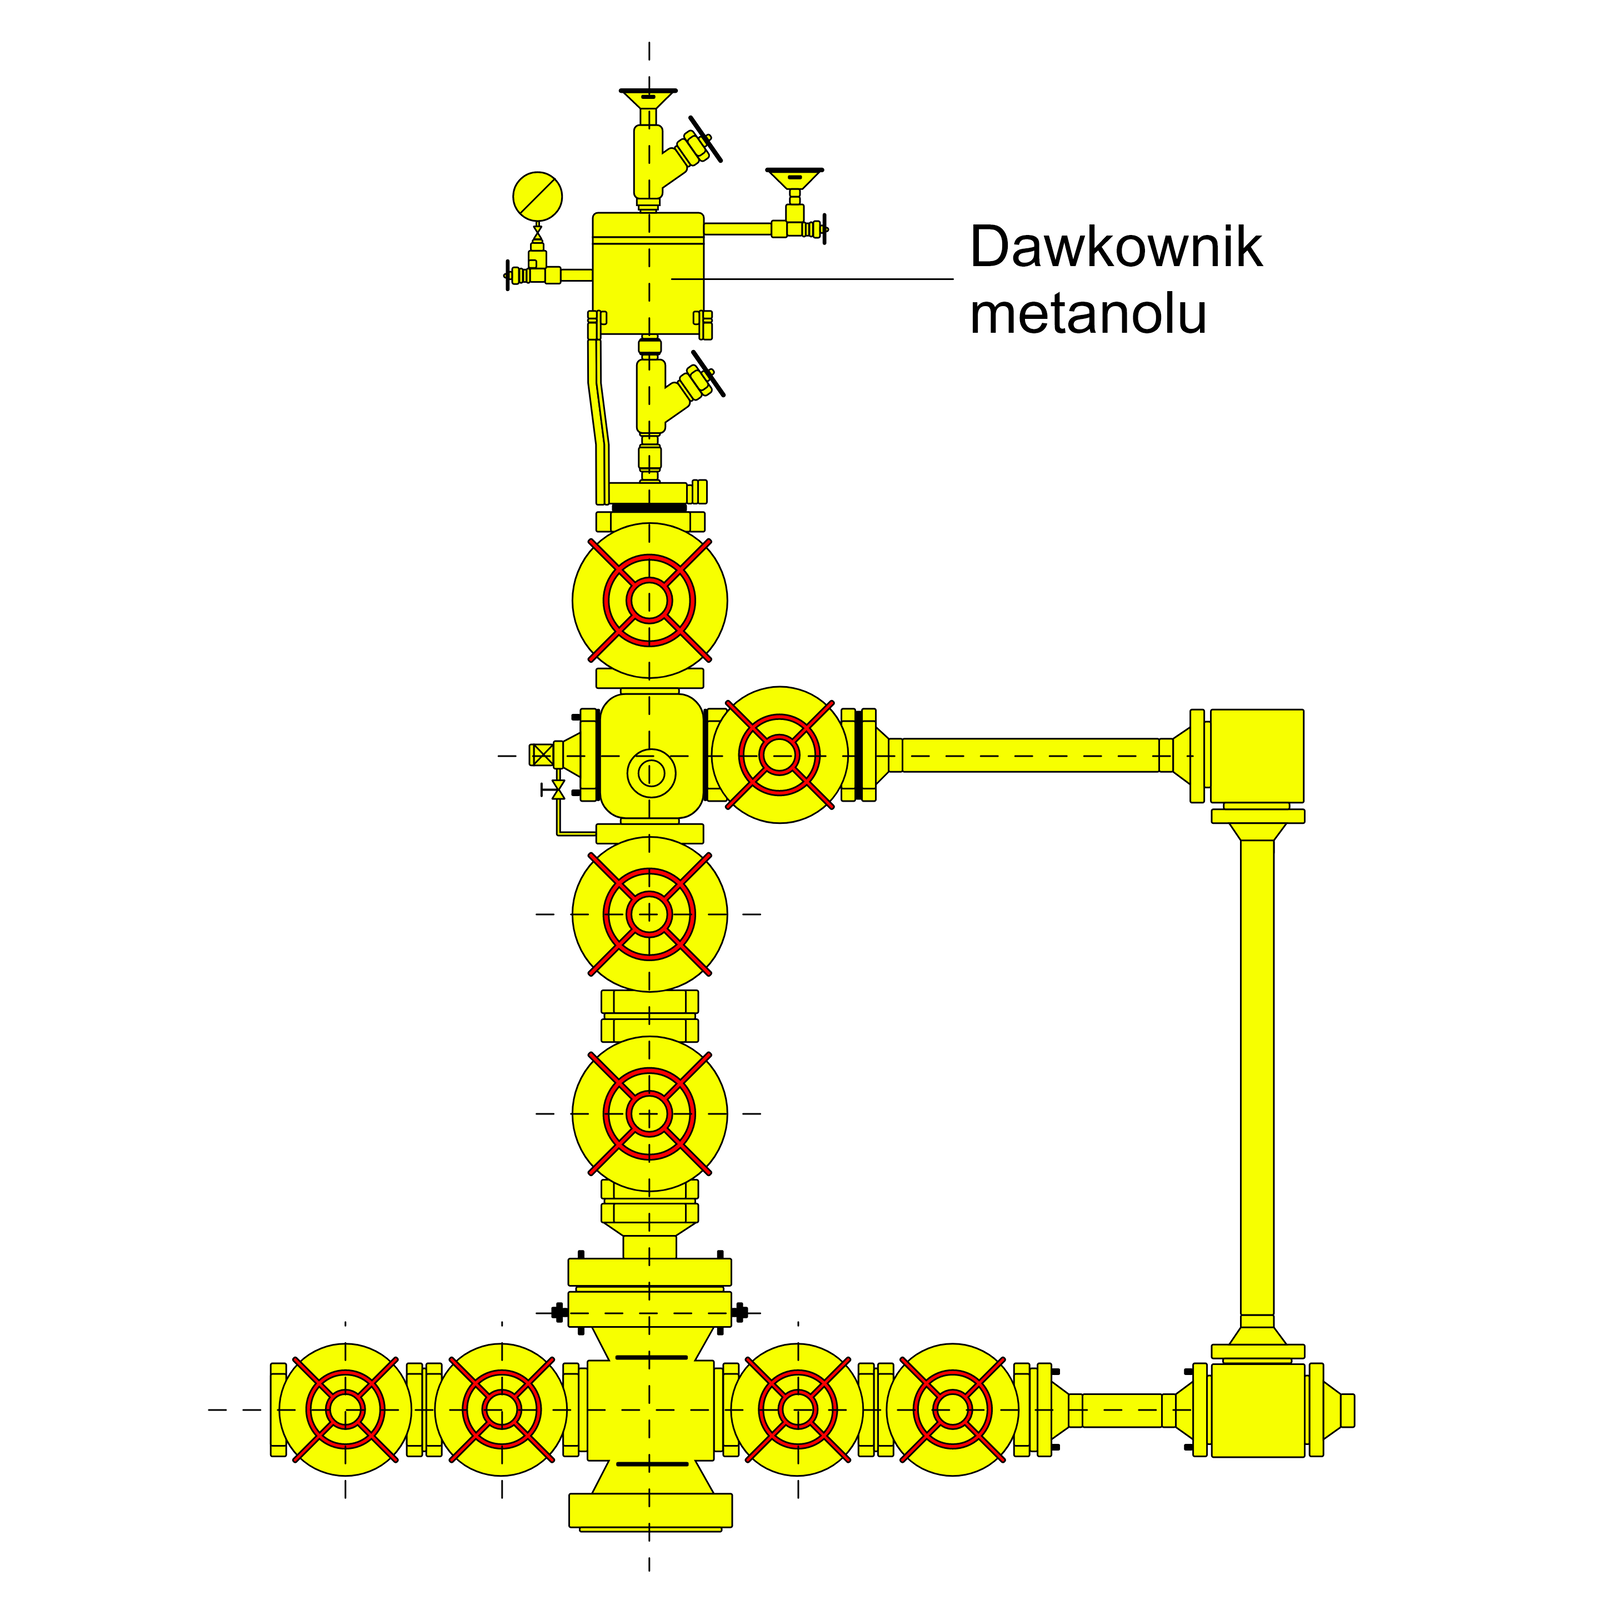 Na zdjęciu przedstawiono schemat dawkownika metanolu montowanego na głowicy eksploatacyjnej. Dawkownikiem metanolu nazywane jest urządzenie służące do dodawania metanolu do strumienia gazu, w celu chwilowego zapobiegnięcia powstawania hydratów, natomiast głowica eksploatacyjna jest montowana na szczycie odwiertu, i służy do zabezpieczenia odwiertu przed niekontrolowanym ujściem węglowodorów na zewnątrz. Urządzenia przedstawione na schemacie są koloru żółtego, wyłączając zasuwy suwakowe, których pokrętła są oznaczone kolorem czerwonym.Patrząc od góry, na samym szczycie głowicy mamy zamontowany dawkownik metanolu. Jest to urządzenie, którego centralną postacią jest kwadratowy element, z czterema odejściami, po jednym na każdej stronie. Na środku głównego elementu znajduje się czarna linia odniesienia, do której dołączony jest napis „dawkownik metanolu”.Odejście umiejscowione na górnej krawędzi ma kształt prostokąta o zaokrąglonych rogach, umieszczonego w pozycji pionowej. Element ten zakończony jest mniejszym kwadratem, wyglądającym jak redukcja wymiaru poprzedniego elementu, a na samym szczycie umiejscowiony jest trójkąt równoboczny, ustawiony swoją podstawą do góry, a wierzchołkiem łączącym oba boki – do dołu. Wierzchołek tego trójkąta jest ścięty, co powoduje, że trójkąt zmienia się w trapez, którego podstawa dolna jest krótsza, niż podstawa górna. Dodatkowo, mniej więcej na środku wysokości tego odejścia, po prawej stronie, znajduje się kolejne odejście, ustawione pod kątem 45° od osi poziomej, zakończone grubą, czarną linią.Prawe odejście umiejscowione jest na prawej krawędzi centralnego elementu dawkownika, na maksymalnej możliwej wysokości, tuż przy wierzchołku. Składa się ono z cienkiego prostokąta, ustawionego w pozycji poziomej, który zakończony jest który zakończony jest grubą, czarną linią, ustawioną w pozycji pionowej. Tuż przed zakończeniem, znajduje się kolejne odejście do góry, gdzie przy pomocy dwóch małych kwadratów, ustawionych jeden na drugim, osadzony jest trapez, o krótszej podstawie dolnej, niż podstawie górnej.Odejście znajdujące się po lewej stronie głównego elementu, umieszczone jest w osi poziomej omawianego kwadratu. Odejście to przedstawiono jako prostokątny element, umiejscowiony w pozycji poziomej, który zakończony jest wyraźną, czarną linią, umieszczoną w pionie. Tuż przed zakończeniem tego elementu, znajduje się odejście skierowane ku górze, na szczycie którego znajduje się koło, z zaznaczoną średnicą, nachyloną pod kątem 45°.Ostatnie, dolne odejście od centralnego elementu dawkownika, to odejście łączące głowicę eksploatacyjną z dawkownikiem. Część tą przedstawiono jako prostokątny element, ustawiony w pozycji pionowej, który w połowie swojej wysokości, po prawej stronie, ma odejście pod kątem 45°, zakończone czarną, wyraźną linią, ustawioną pod kątem 90° do omawianego odejścia.Dodatkowo, od głównego elementu dawkownika, od jego lewego, dolnego wierzchołka, poprowadzono prostokątny element, który łączy się z górnym lewym wierzchołkiem głowicy eksploatacyjnej.Patrząc w dół, następnymi elementami są dwa prostokąty, ustawione w pozycji poziomej, leżące jeden na drugim. Pod nimi znajduje się żółte, duże koło, pośrodku którego zaznaczone są dwa czerwone okręgi, jeden w środku drugiego, a całość jest przecięta czerwonymi poprzeczkami, ustawionymi w znak litery X.Poniżej znajduje się prostokątny element, mający dwa odejścia, po jednym w prawą oraz w lewą stronę. Odejście lewe jest bardzo krótkie i ma kształt trójkąta, którego podstawa jest ustawiona w pozycji pionowej, a jego wierzchołek, łączący oba boki, skierowany jest w lewą stronę. Tuż poniżej wierzchołka, poprowadzone jest odejście w dolnym kierunku,  które następnie skręca w prawą stronę, ponownie łącząc się z głowicą. Odejście to jest przedstawione przy pomocy bardzo cienkiej krzywej, która w swojej pionowej części jest przedzielona elementem o kształcie klepsydry, od którego z lewej strony wychodzi czarna kreska, w kształcie litery T.Na samym początku prawego odejścia w omawianym prostokącie znajduje się żółte koło, a w jego środku dwa czerwone pierścienie, umiejscowione jeden w środku drugiego. Pierścienie te są przecięte  czerwonymi poprzeczkami ułożonymi w kształcie litery X. Następnymi elementami w tym odejściu są dwa prostokąty, ustawione w pozycji pionowej, a za nimi znajduje się element w kształcie trapezu, którego dłuższa podstawa jest połączona z drugim prostokątem. Trapez ten można traktować jako redukcję z pierścienia uszczelniającego oraz kołnierza, do połączenia z następnym elementem, czyli rurą, przedstawioną jako poziomy, podłużny prostokąt. Następnie, przy pomocy kolejnego trapezu, łączy się z elementem o kształcie kwadratu, który posiada dwa przyłącza. Drugie odejście skierowane jest ku dołowi, gdzie ponownie przy pomocy trapezu, instalacja przechodzi w rurę, przedstawioną jako pionowy, wysoki prostokąt. Na samym dole, znów przy pomocy trapezu, rura łączy się z odejściem trójnika, skierowanym ku górze.Następnymi elementami, przedstawionymi na schemacie, są dwie zasuwy suwakowe, oznaczone jako żółte koła, z dwoma czerwonymi okręgami pośrodku, które są przecinane czerwonymi poprzeczkami, ustawionymi w kształcie litery X. Zasuwy te połączone są między sobą za pomocą dwóch prostokątnych elementów, leżących poziomo jeden na drugim.Poniżej drugiej zasuwy mamy kolejny trapez, który jest ustawiony swoją krótszą podstawą ku dołowi, a następnie prostokątny fragment, który łączy się z zespołem korpusu głowicy, czyli elementem w kształcie kwadratu, z dwoma trapezami, przyłączonymi od góry oraz od dołu krótszymi podstawami. Dodatkowo, po bokach znajdują się dwa odejścia, po jednym na każdą stronę, umieszczone w osi omawianego elementu.Lewe odejście jest przedstawione jako dwie zasuwy suwakowe, czyli żółte koła, z czerwonymi okręgami pośrodku nich, przez które przebiegają czerwone poprzeczki ustawione w kształt litery X, przecinając wspomniane okręgi. Zasuwy te ustawione są szeregowo, a połączone są przy pomocy dwóch prostokątnych elementów, połączonych ze sobą dłuższymi bokami, ustawionymi w pozycji pionowej. Na samym końcu odejścia, za druga zasuwą, znajduje się kolejny prostokątny element, wielkości jednego z dwóch poprzednich, który również umieszczony jest w pozycji wertykalnej.Prawe odejście od korpusu początkowo jest lustrzanym odbiciem lewego odejścia, czyli dwie zasuwy połączone ze sobą przy pomocy prostokątnych elementów. Następnym elementem, za drugą zasuwą, jest trapezowe przyłączenie do rury, która jest w osi odejścia, w pozycji poziomej. Po krótkim odcinku rury, mającym szerokość zbliżoną do szerokości jednej zasuwy, jest kolejny trapezowy element, przy pomocy którego omawiana rura łączy się z trójnikiem, który łączy dolne oraz górne prawe odejścia w głowicy eksploatacyjnej. Prawe odejście omawianego trójnika zakończone jest kolejnym elementem w kształcie trapezu.